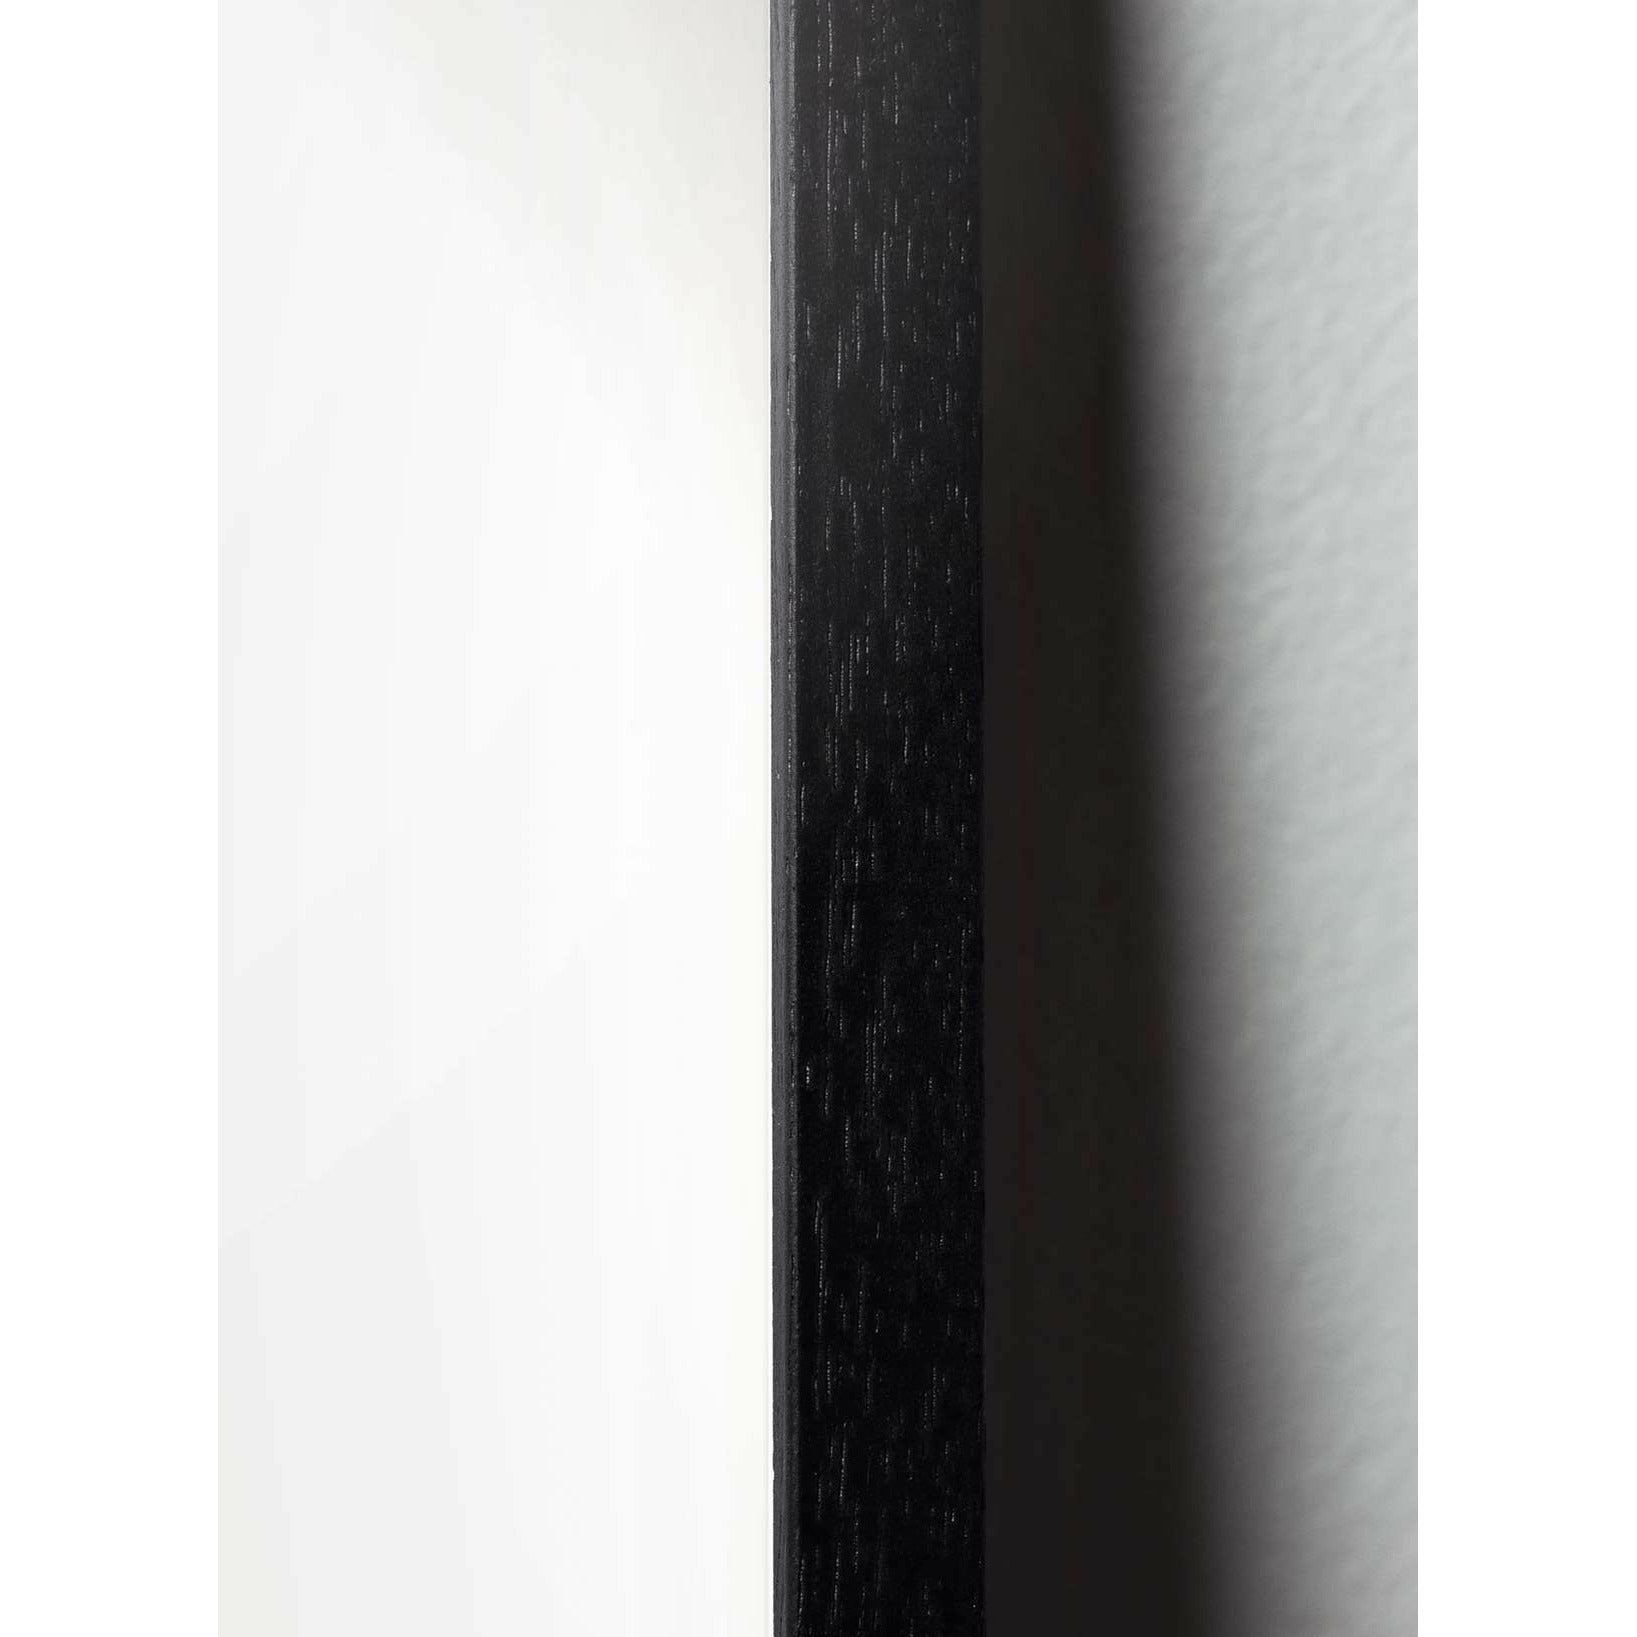 Pomysły plakat parady jaj, rama wykonana z czarnego lakierowanego drewna, A5